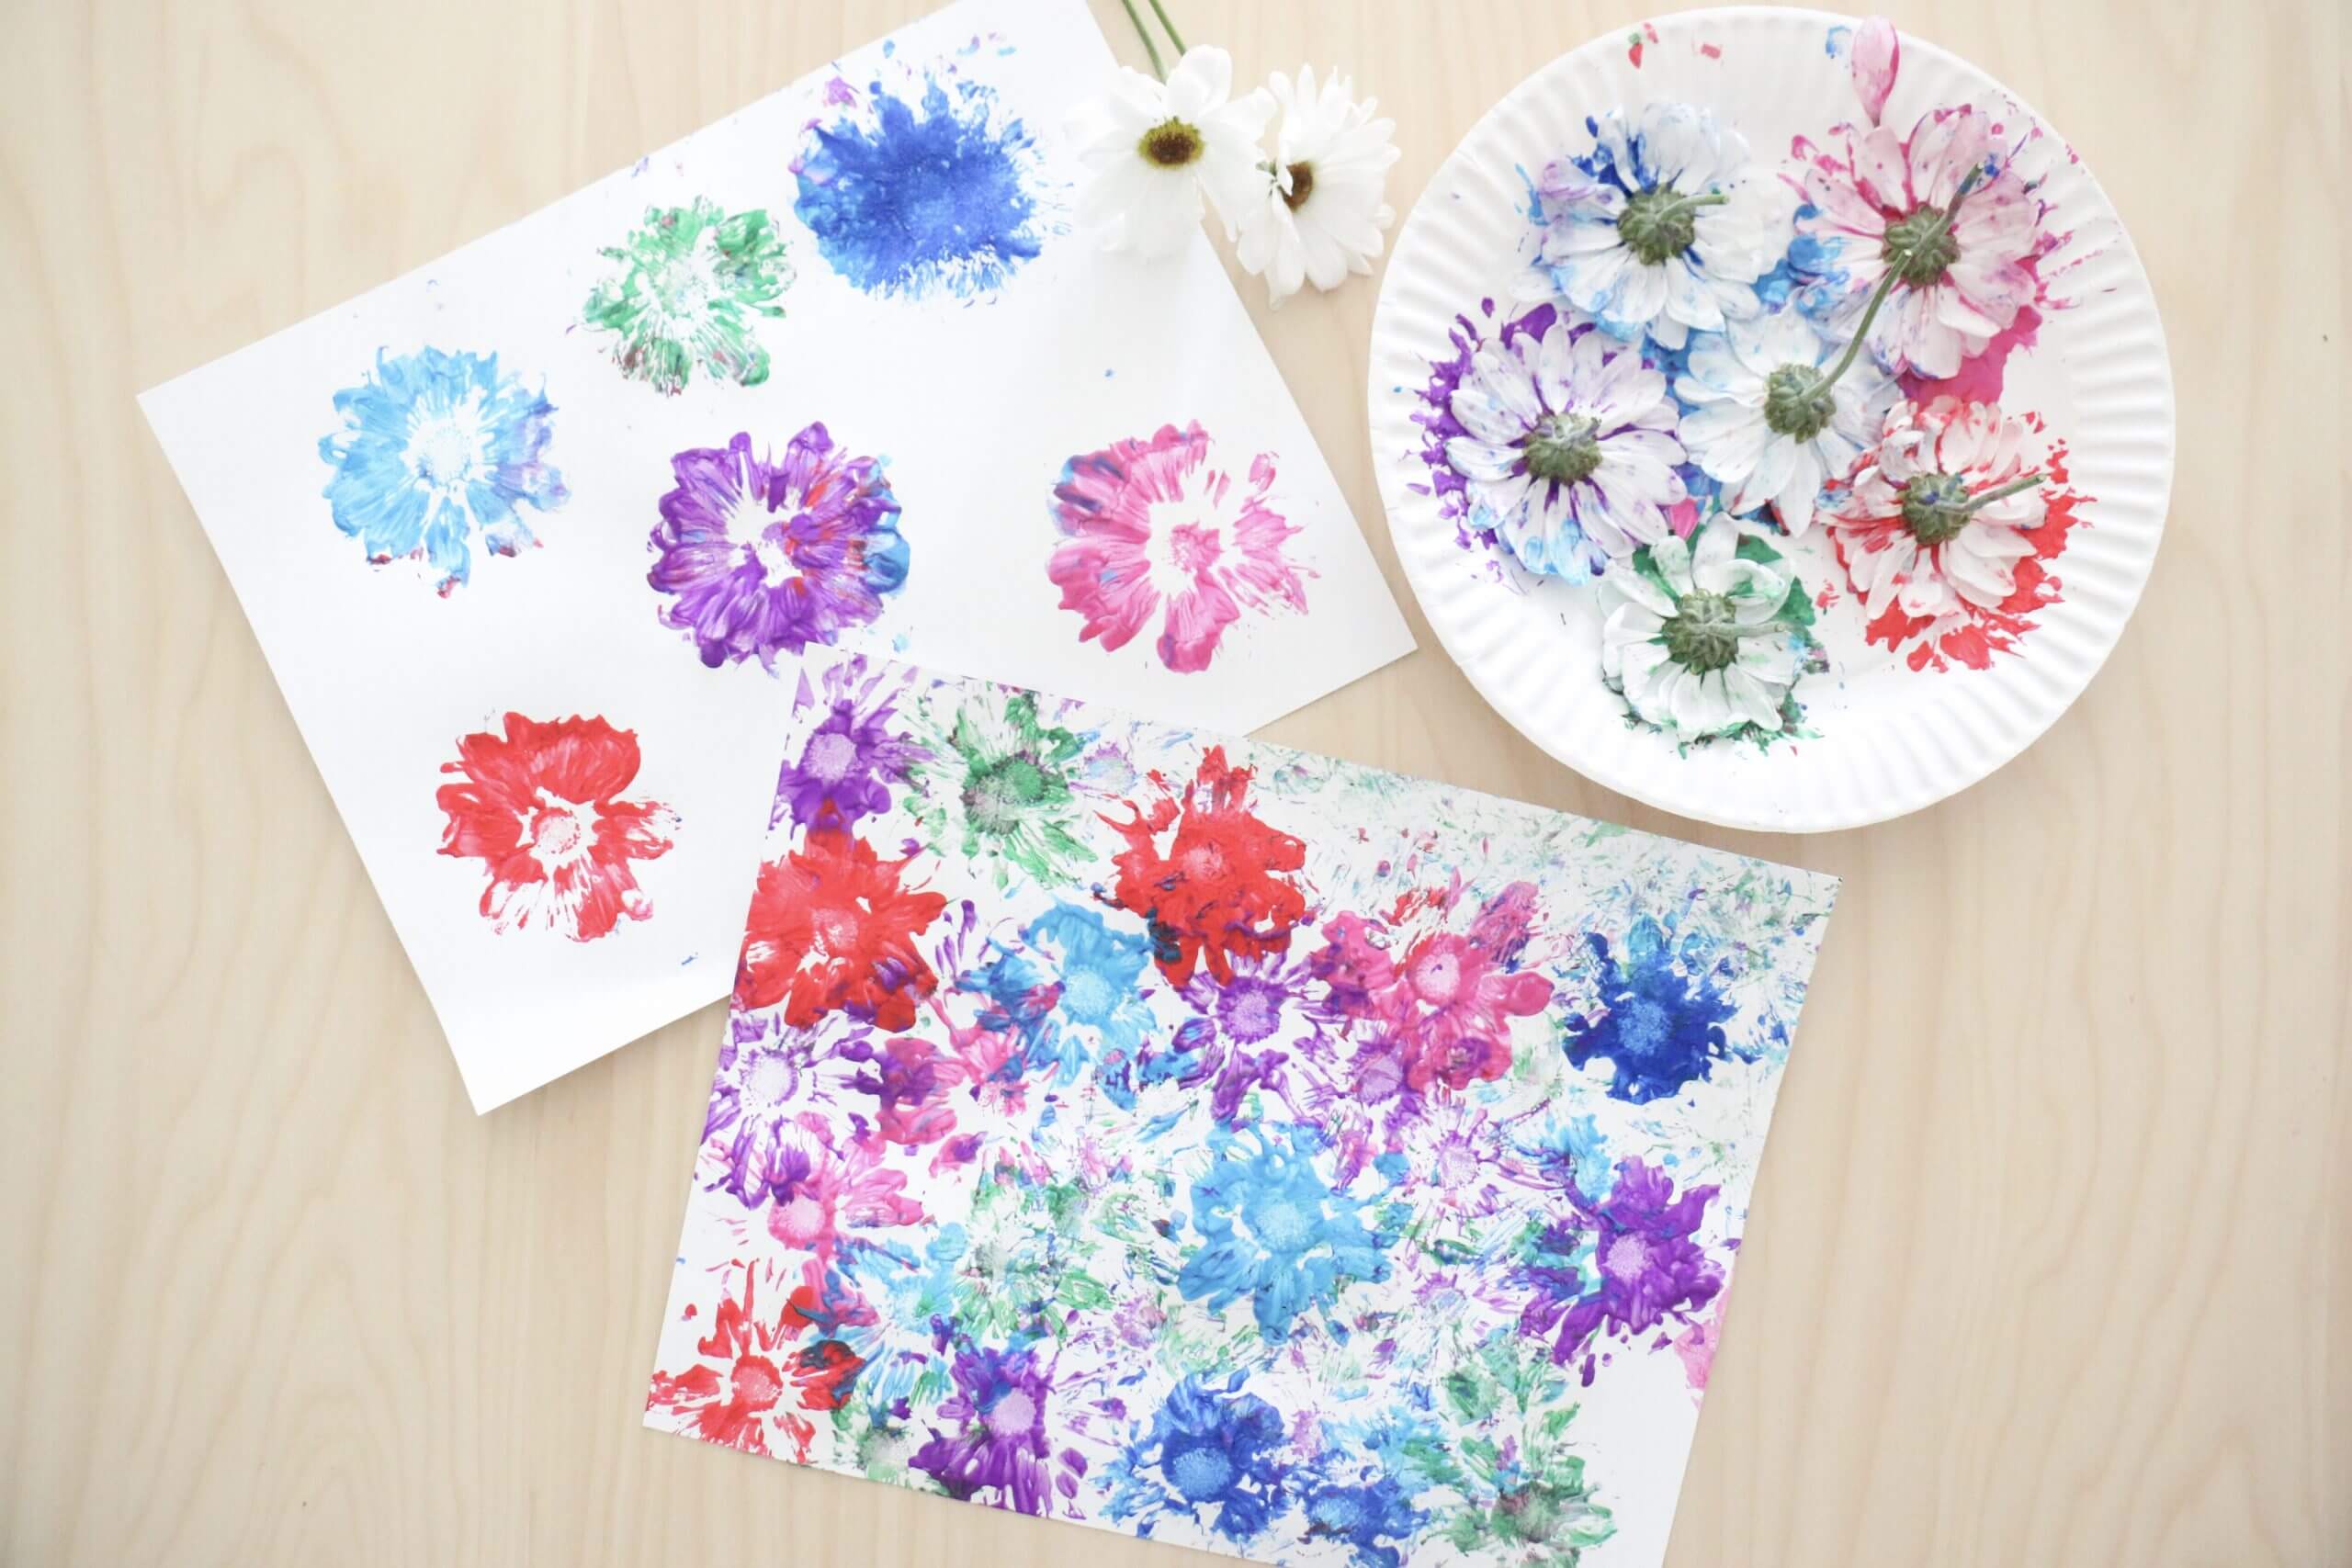 Adorable Floral Stamp Printing Craft For Preschool KidsStamping Flower Art Ideas 